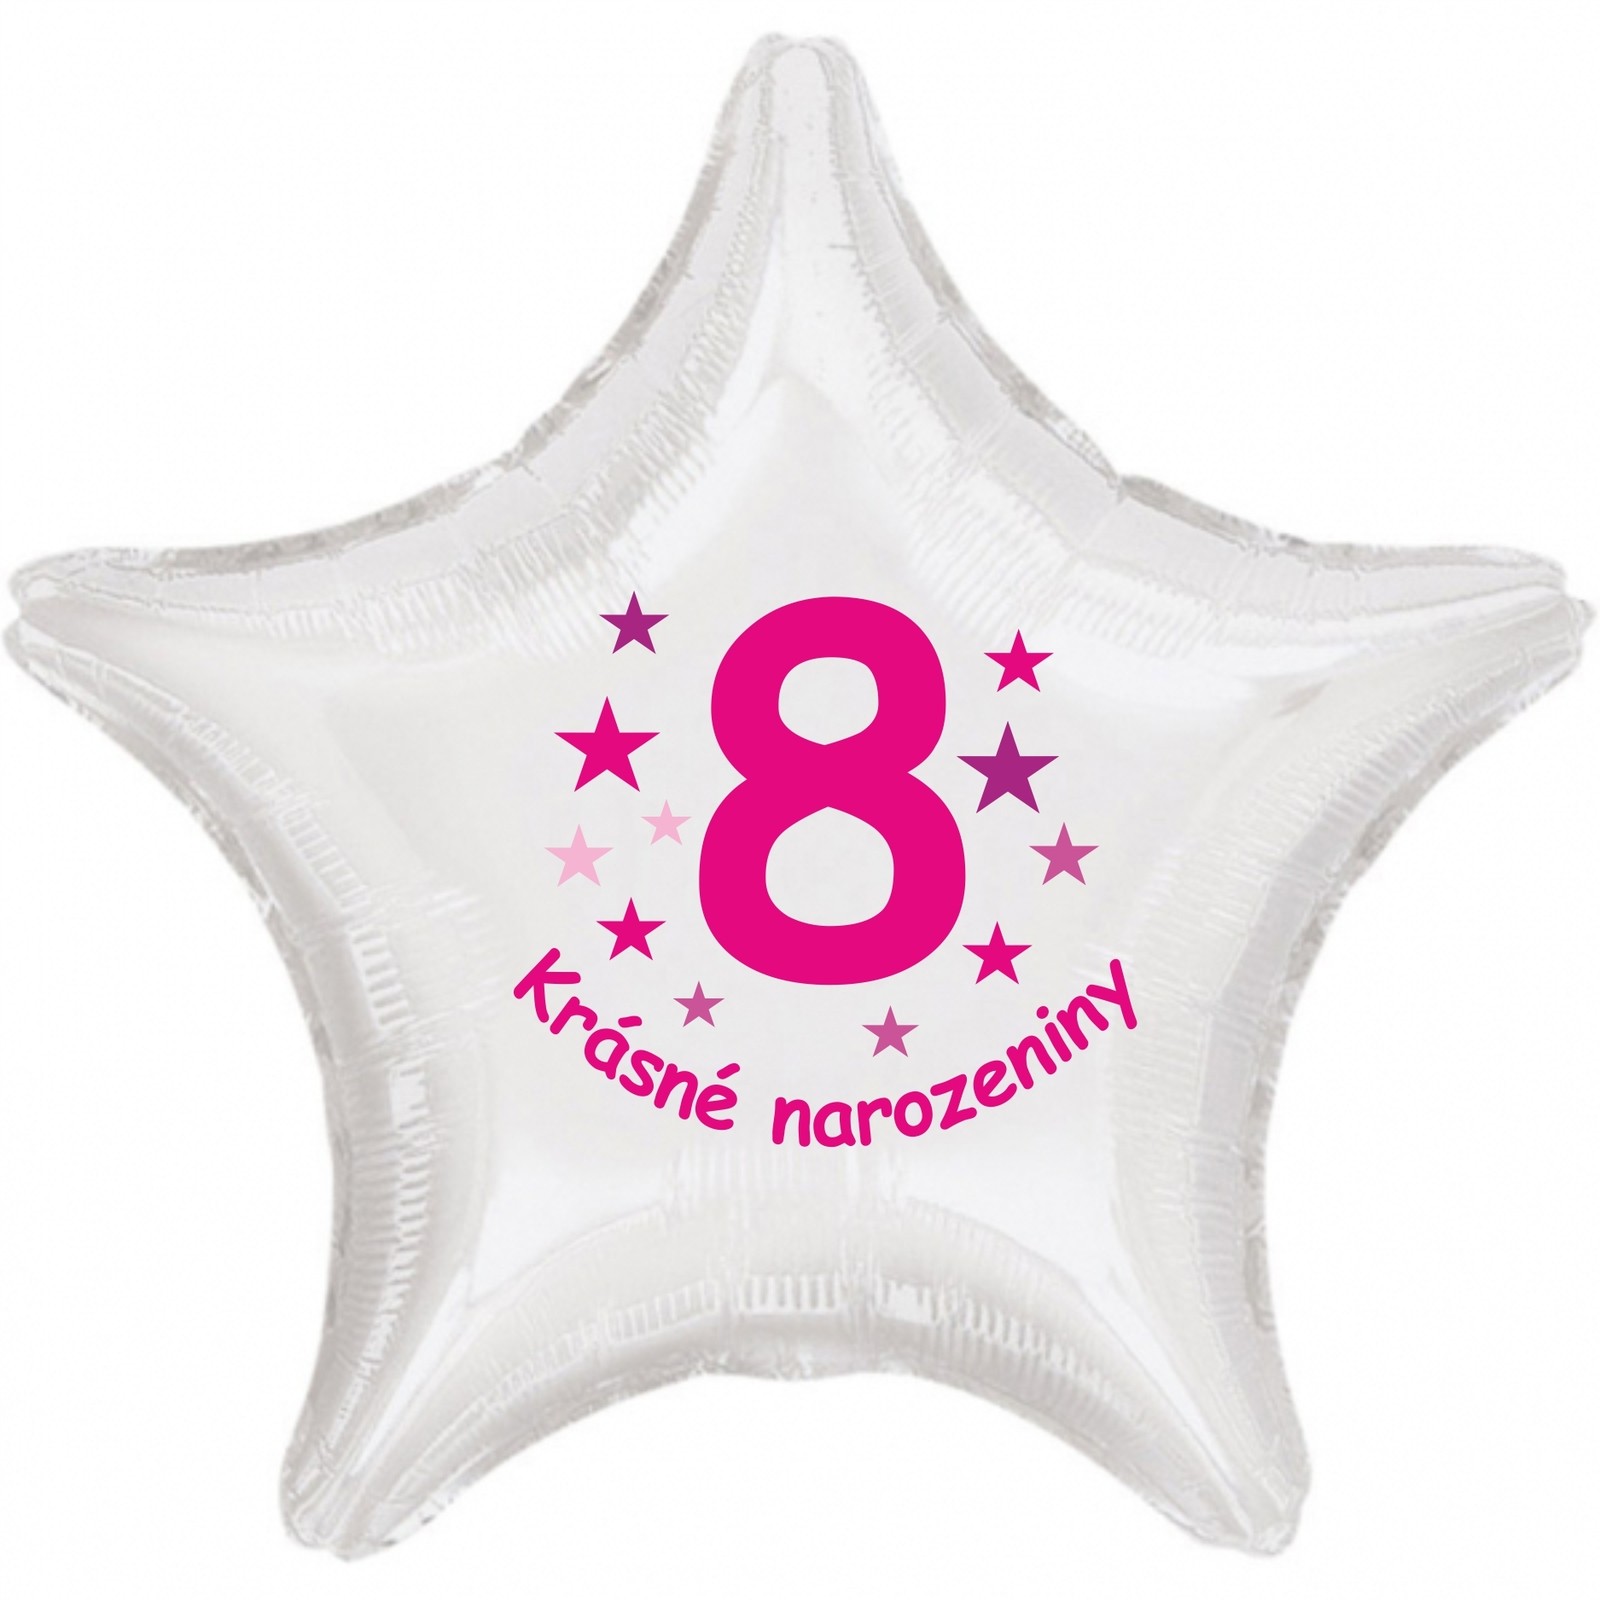 Krásné 8. narozeniny fóliový balónek hvězda pro holky